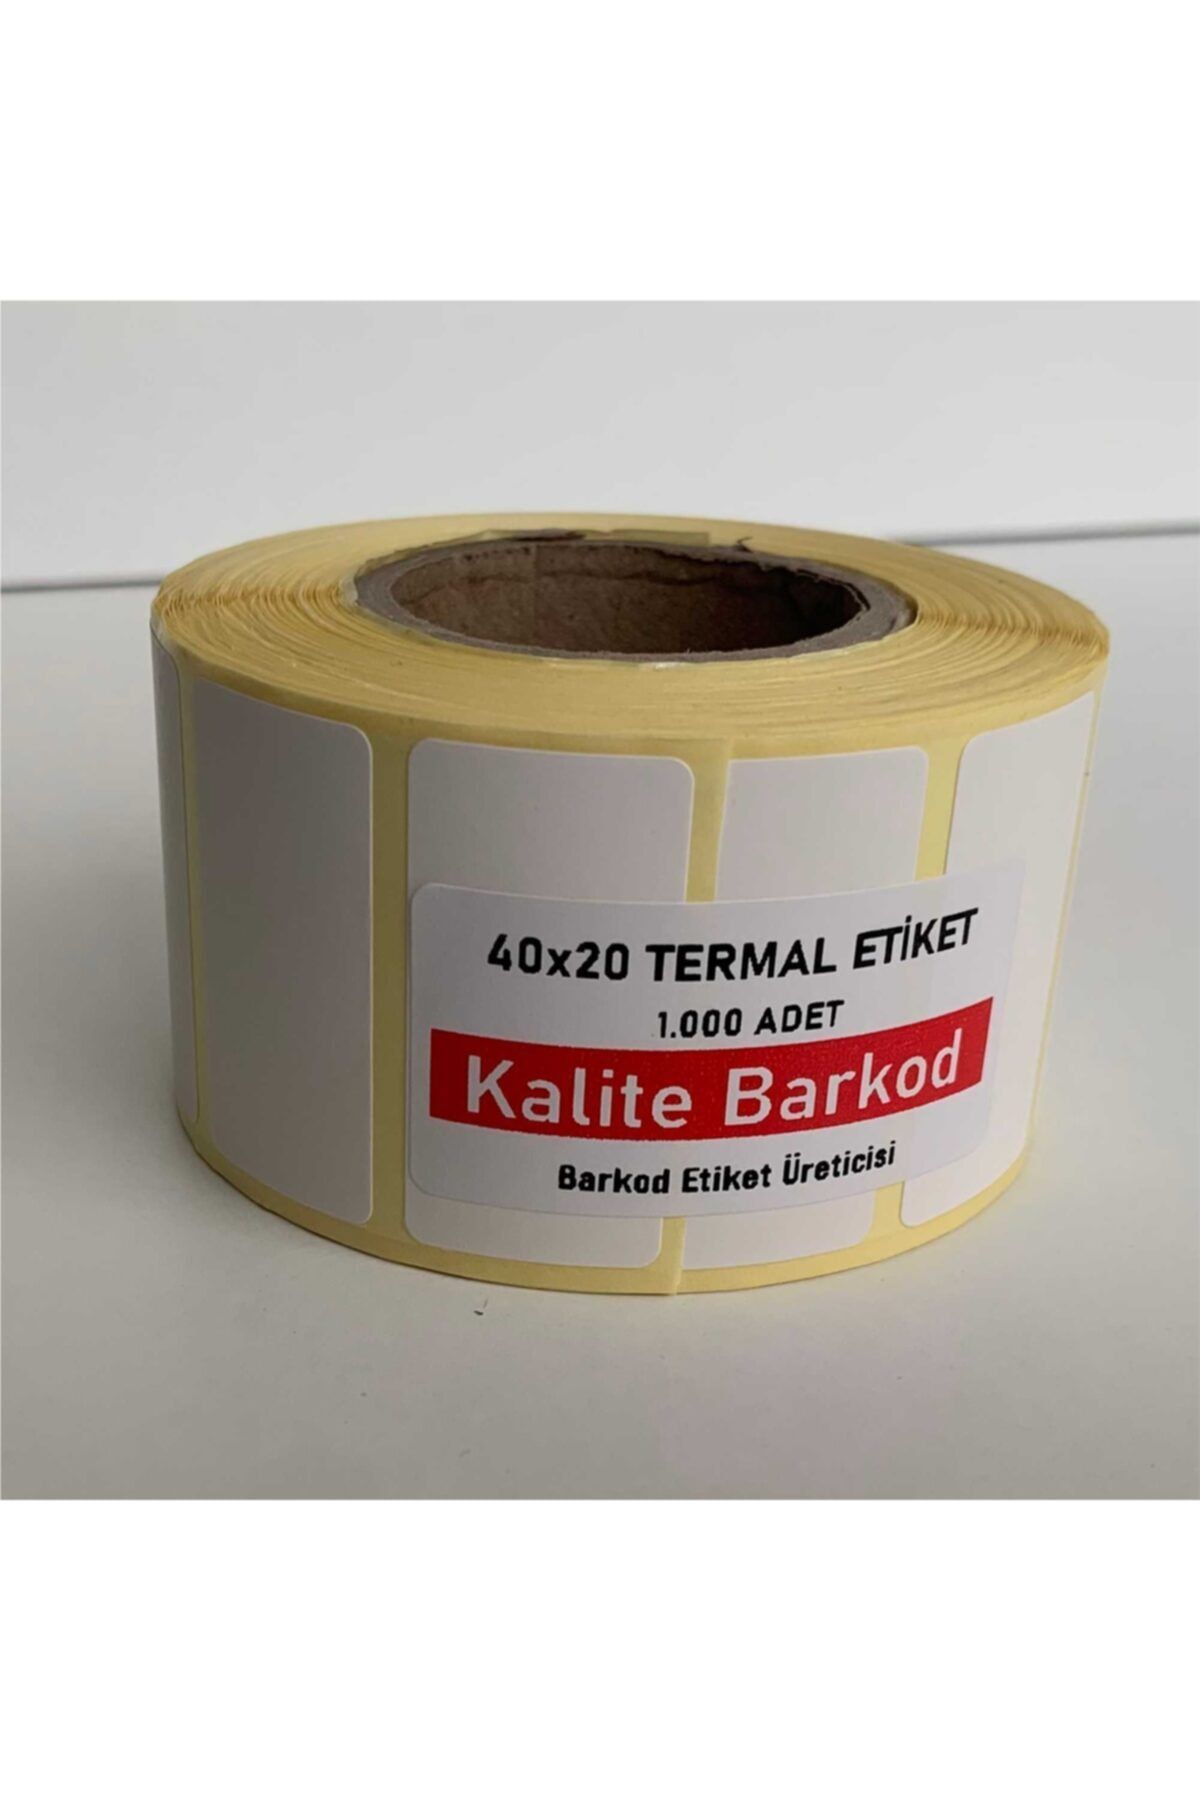 Kalite Barkod Termal Etiket | Barkod Etiket | 40 x 20 cm